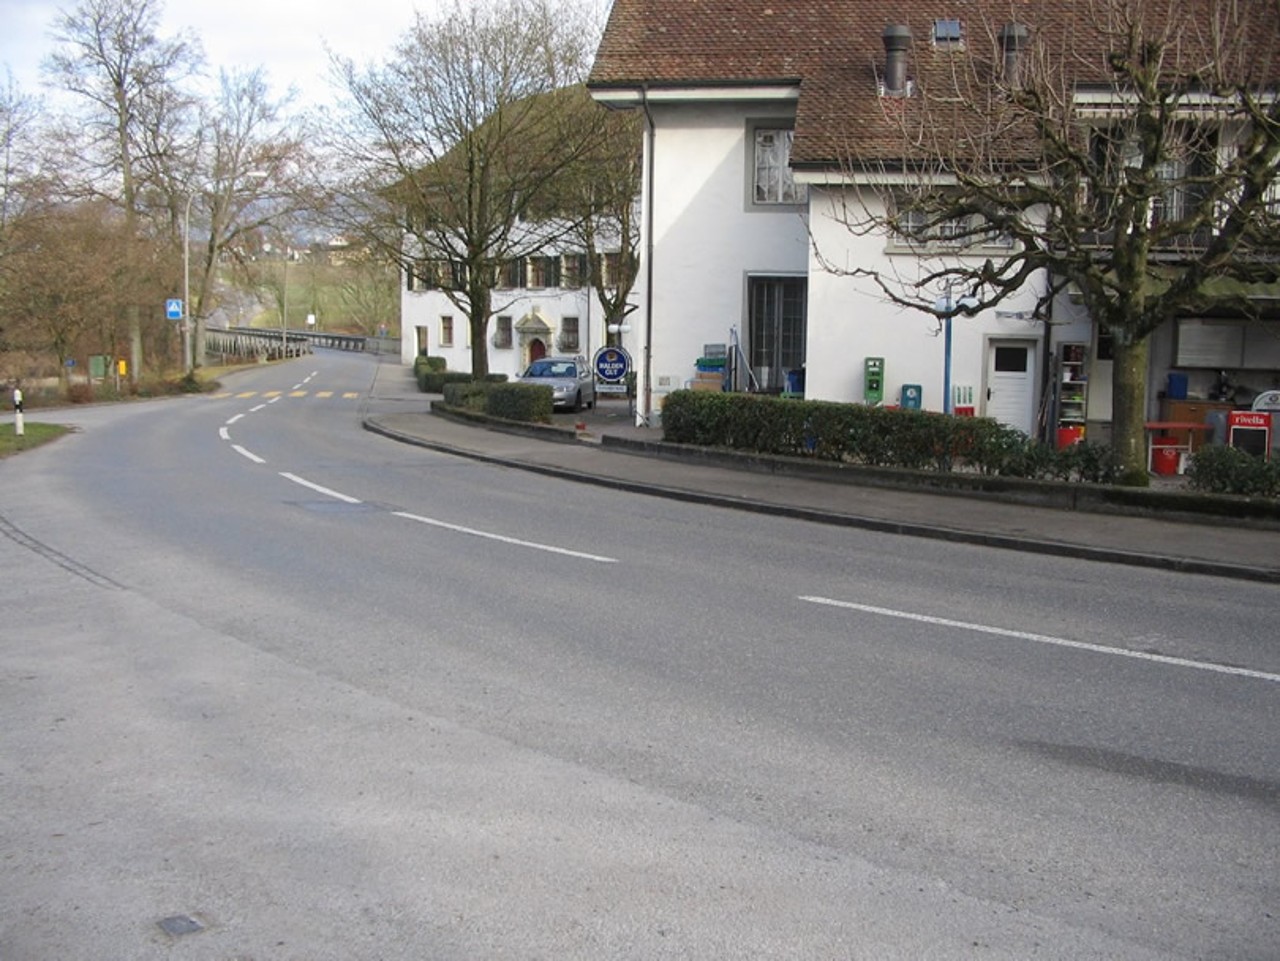 Rechts das Restaurant und links die Einmündung der Ortsverbindungsstrasse von Tägerig